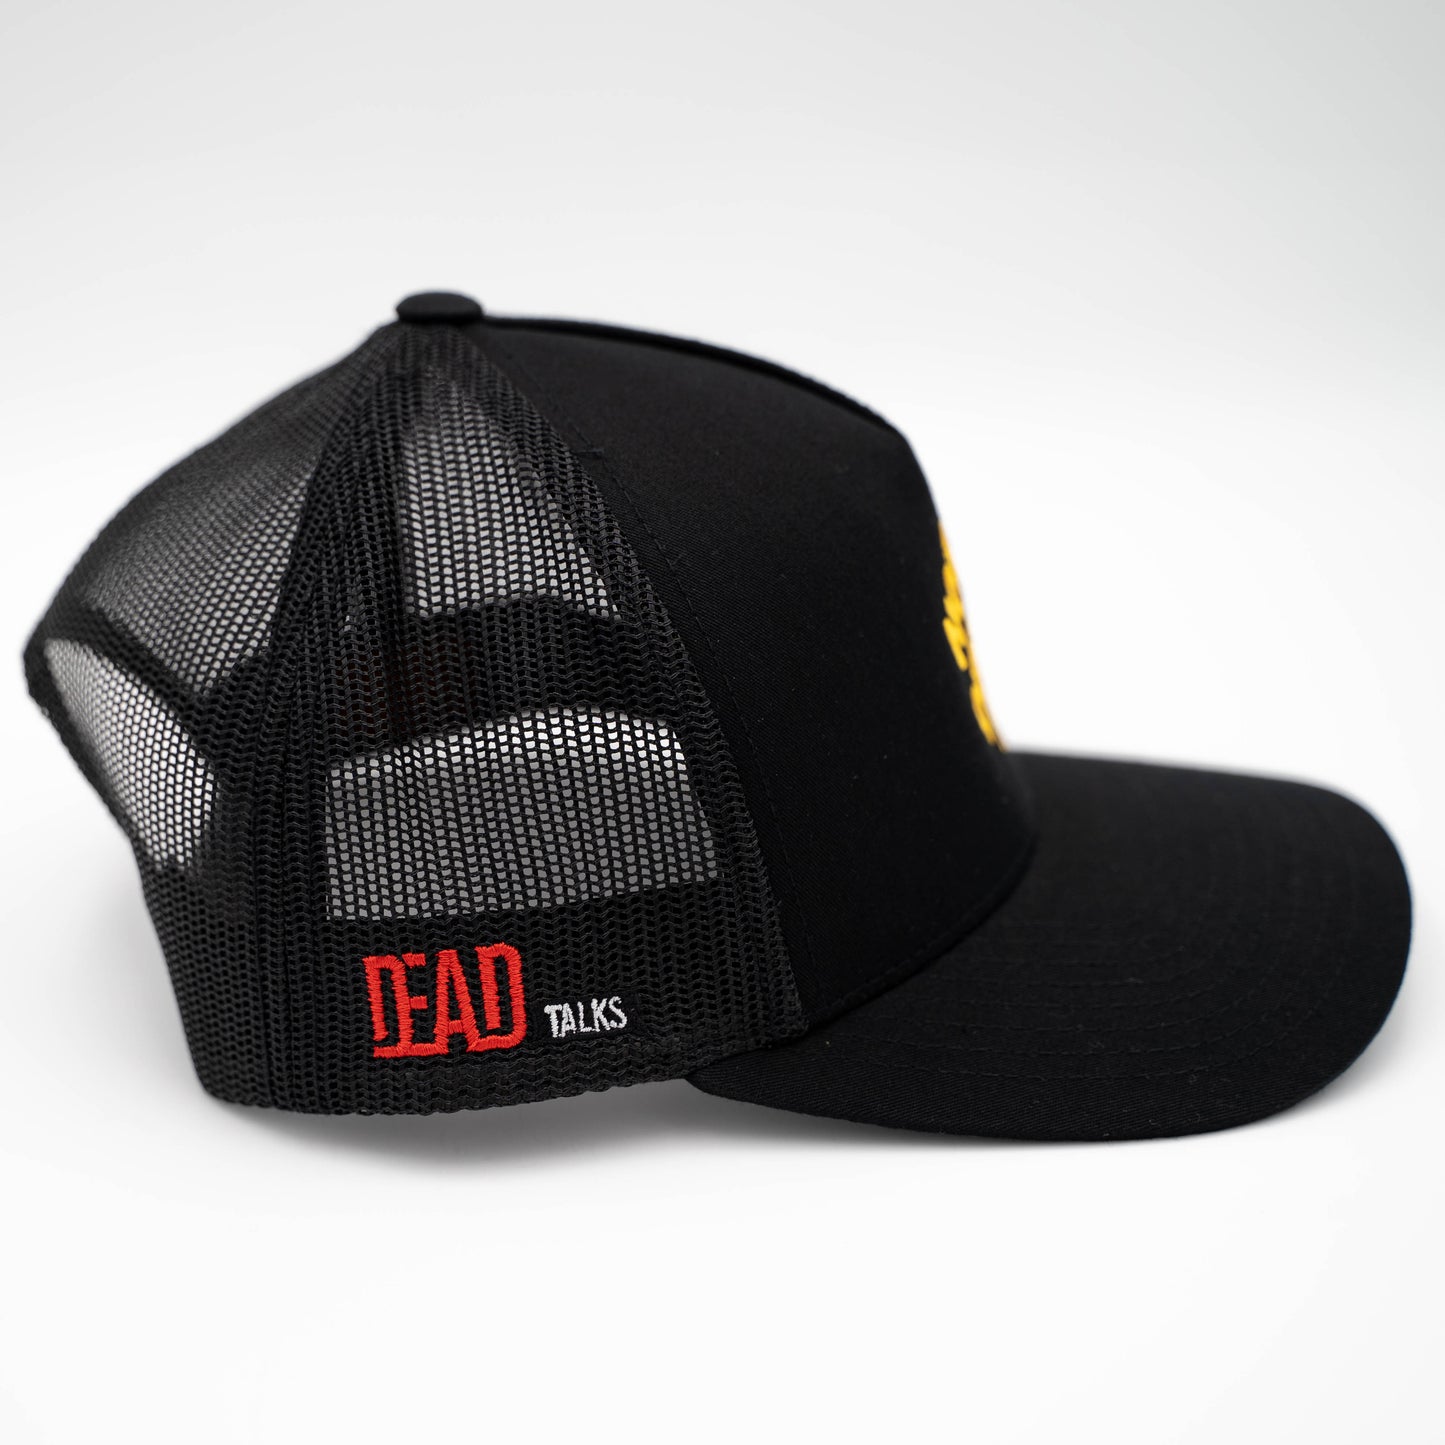 "Not Dead Yet" Trucker Hat